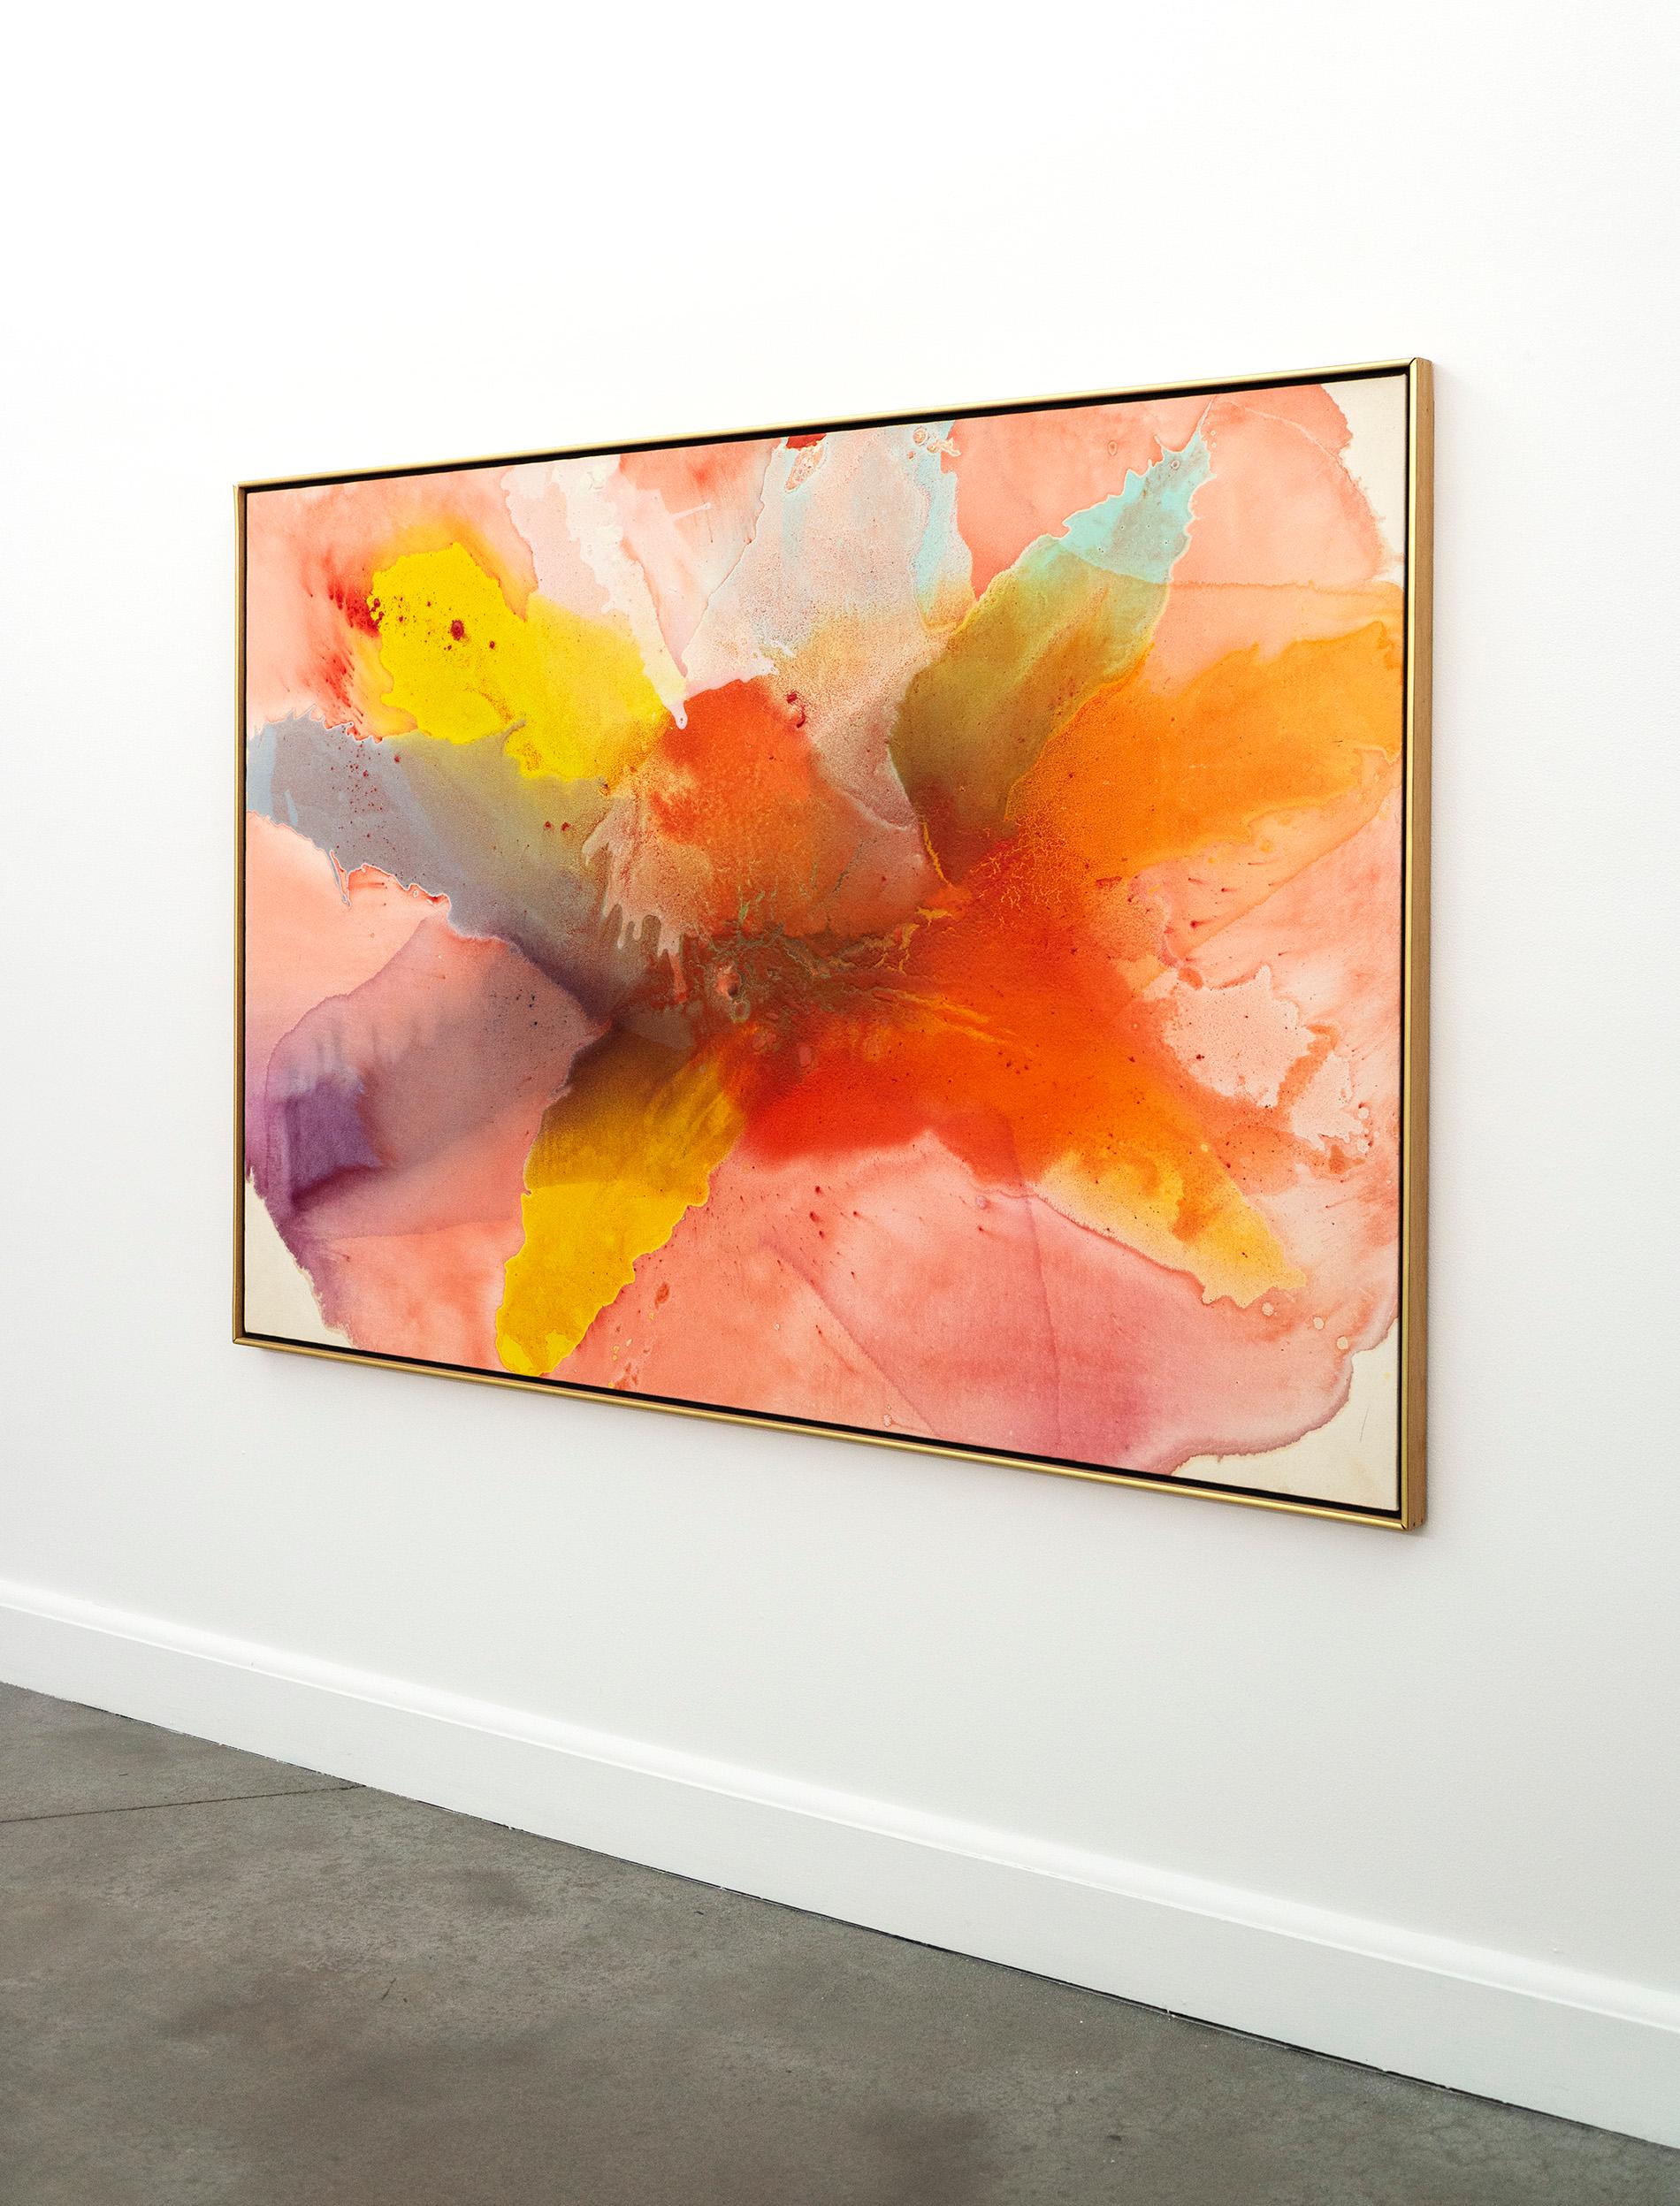 Chanson - groß, farbenfroh, abstrakt, gestisch, Acryl auf Leinwand (Abstrakt), Painting, von Harold Feist